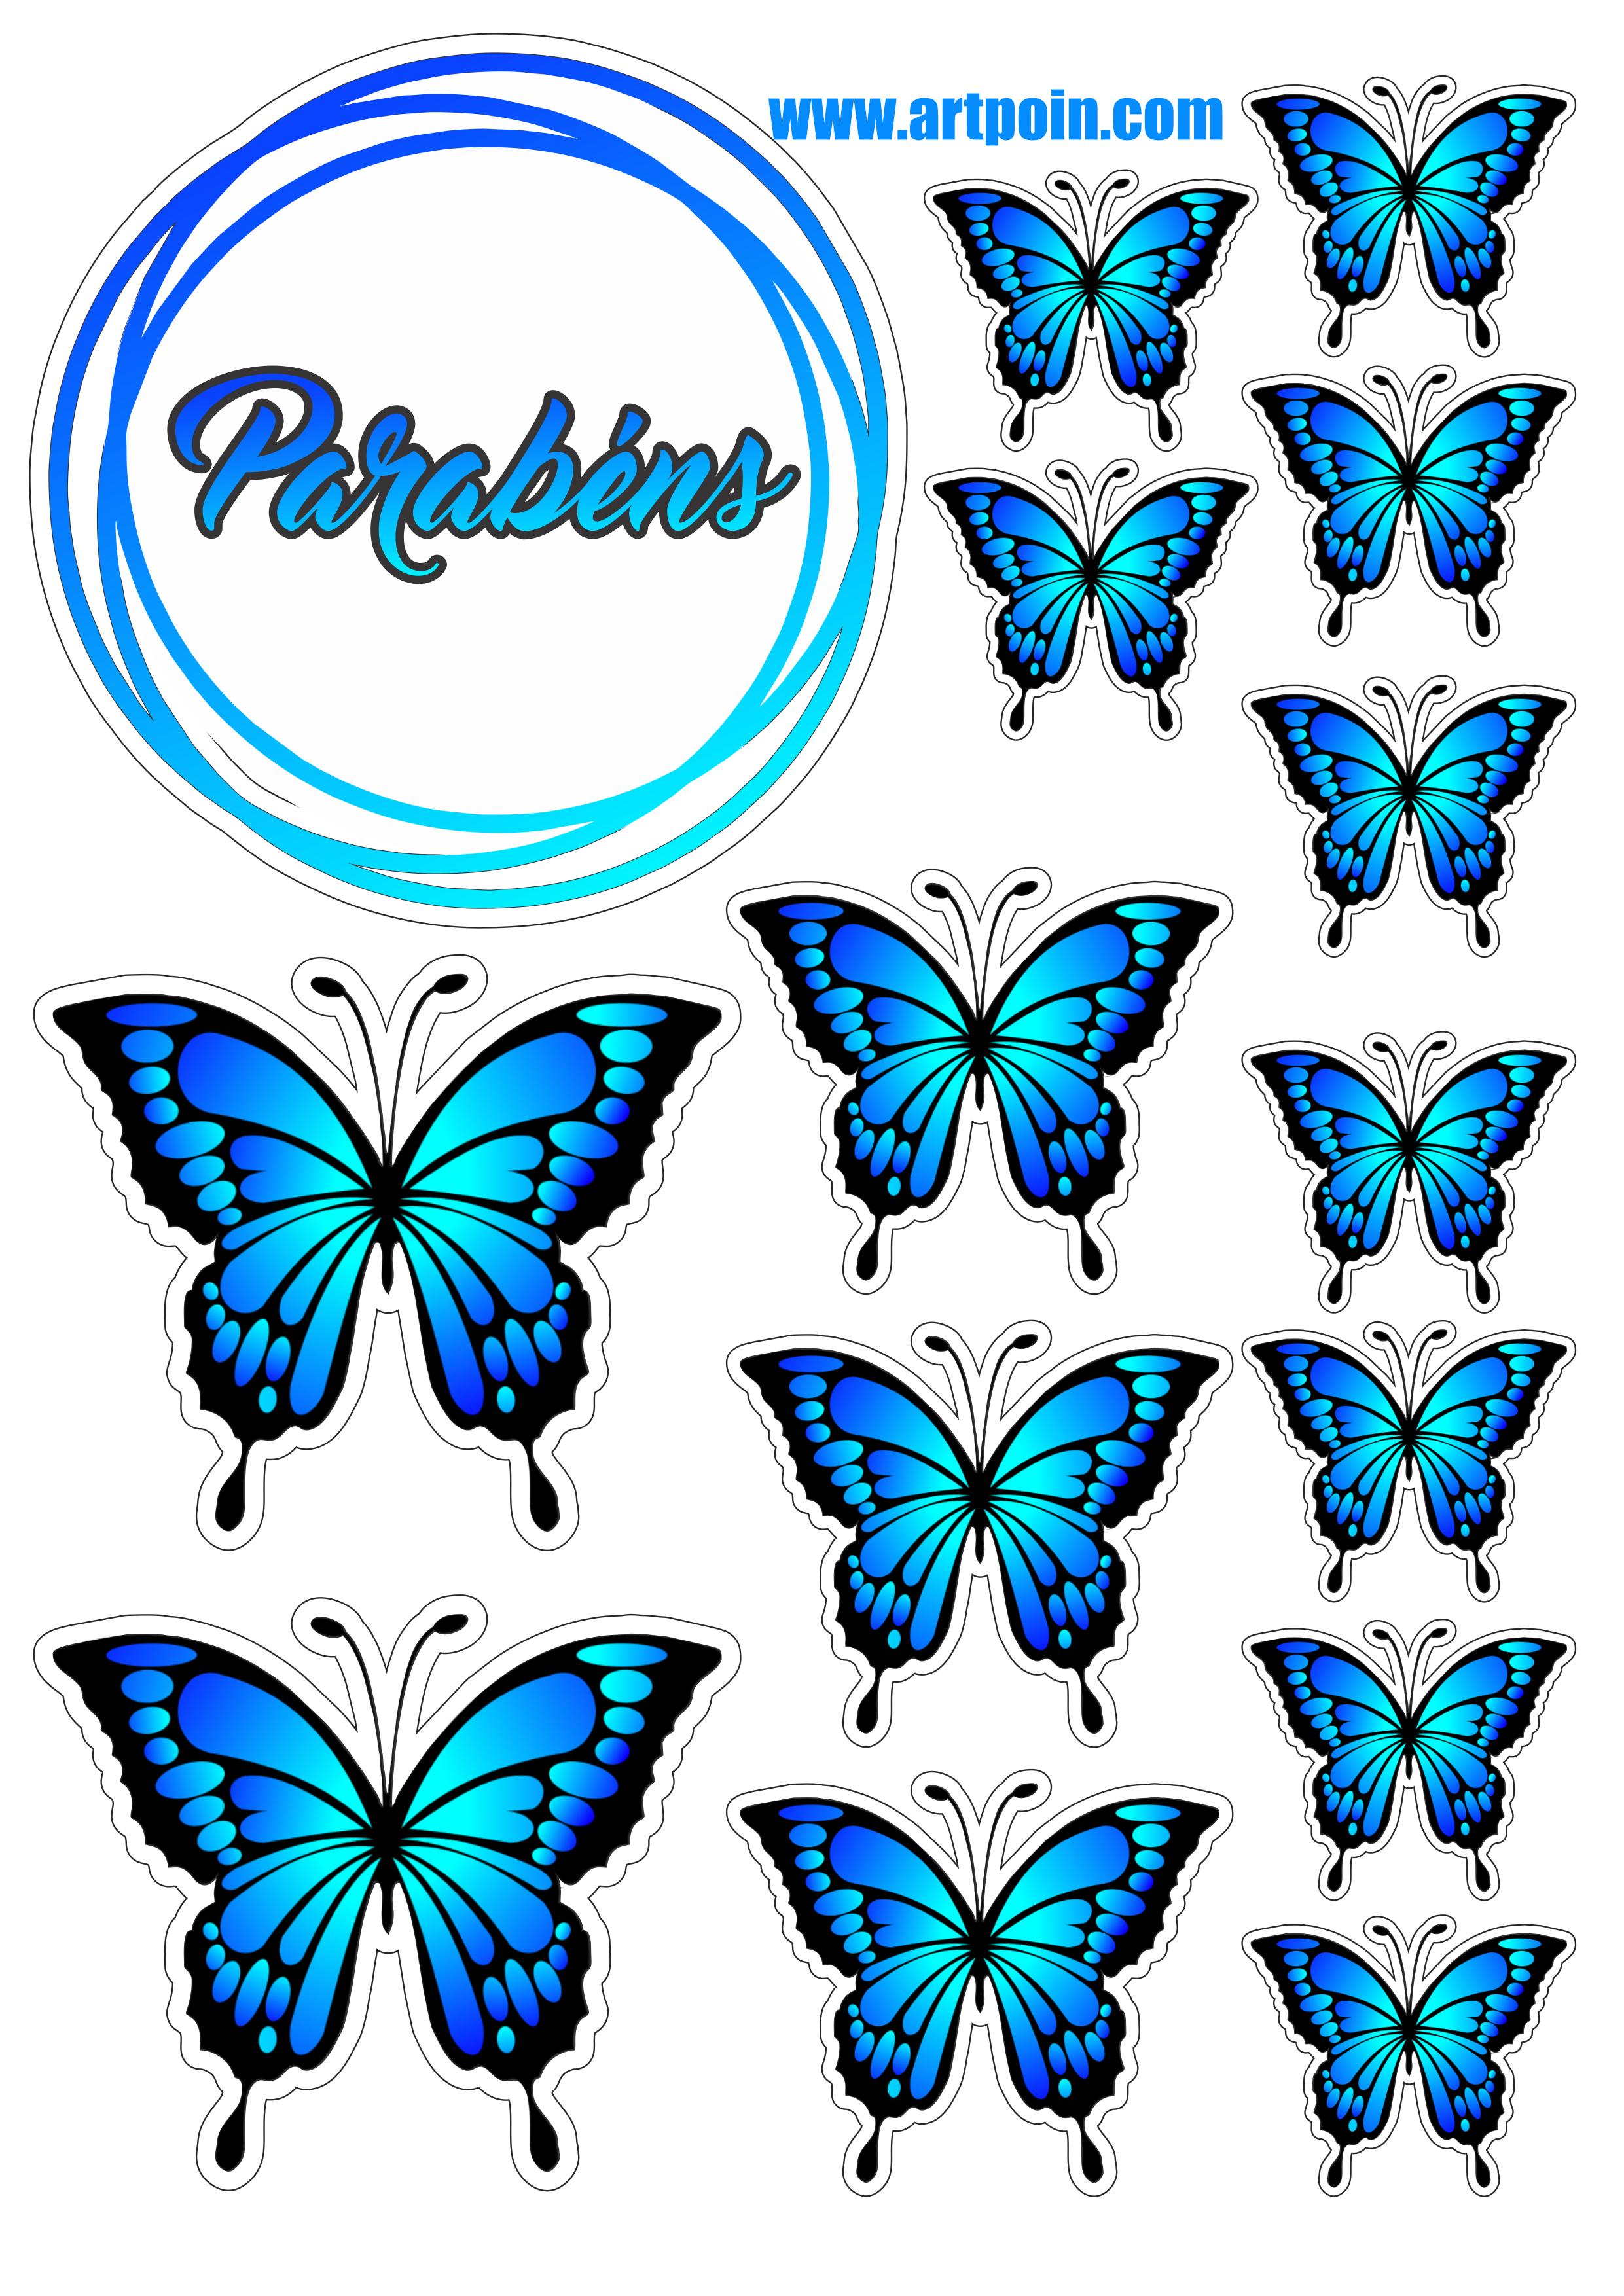 Topo-de-bolo-borboletas-azul1